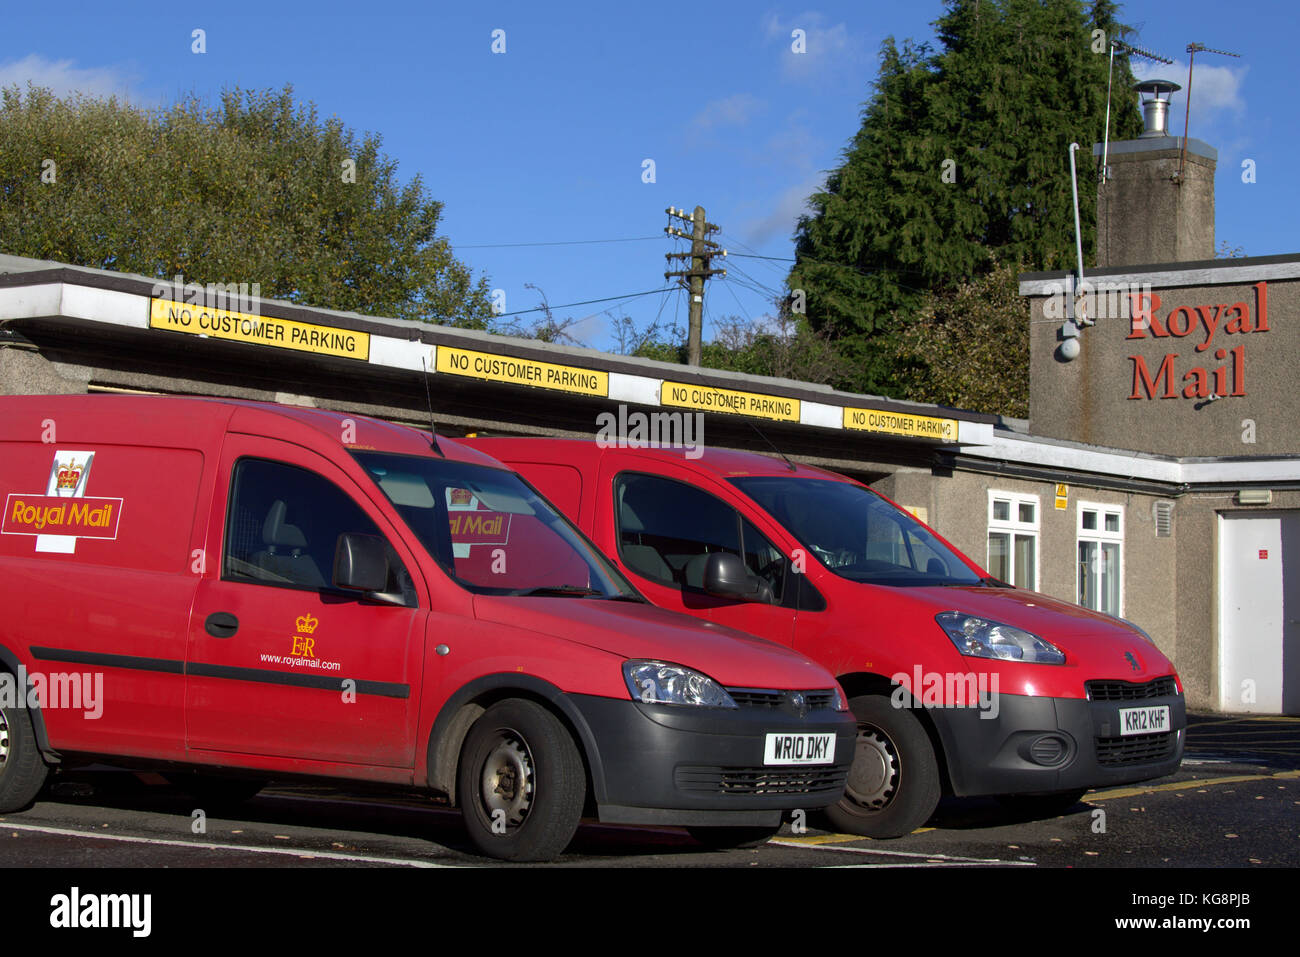 Royal Mail post office depot et fourgonnettes de livraison Livraison glasgow anniesland bureau rouge logo voitures garées comme des conditions de grève Banque D'Images